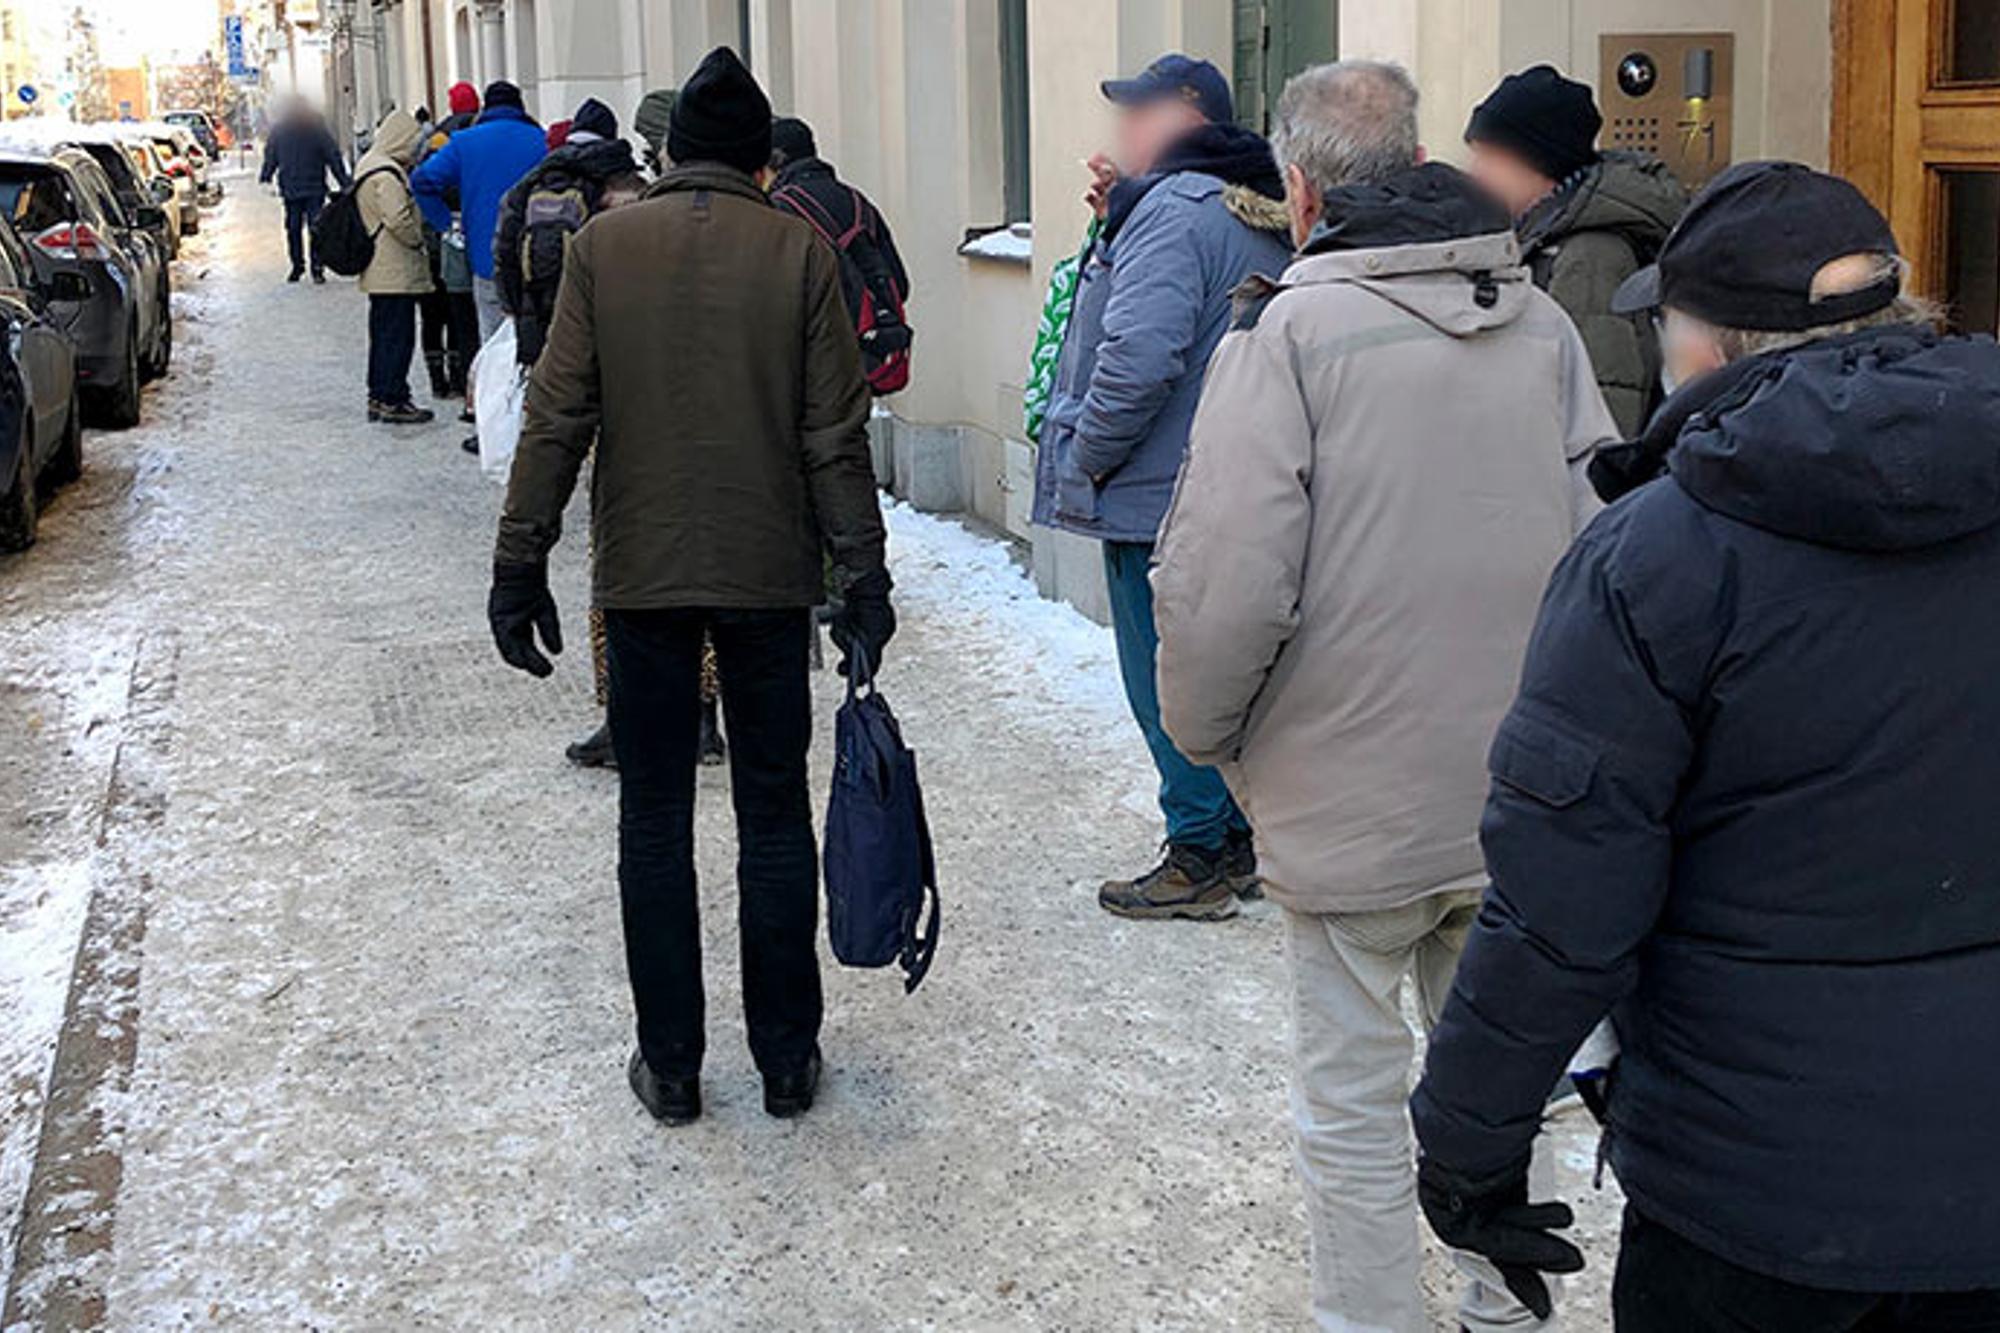 En lång kö av hjälpsökande som står längs med en gata utanför Templet i Stockholm. Personerna i kön står med ryggtavlorna mot kameran.